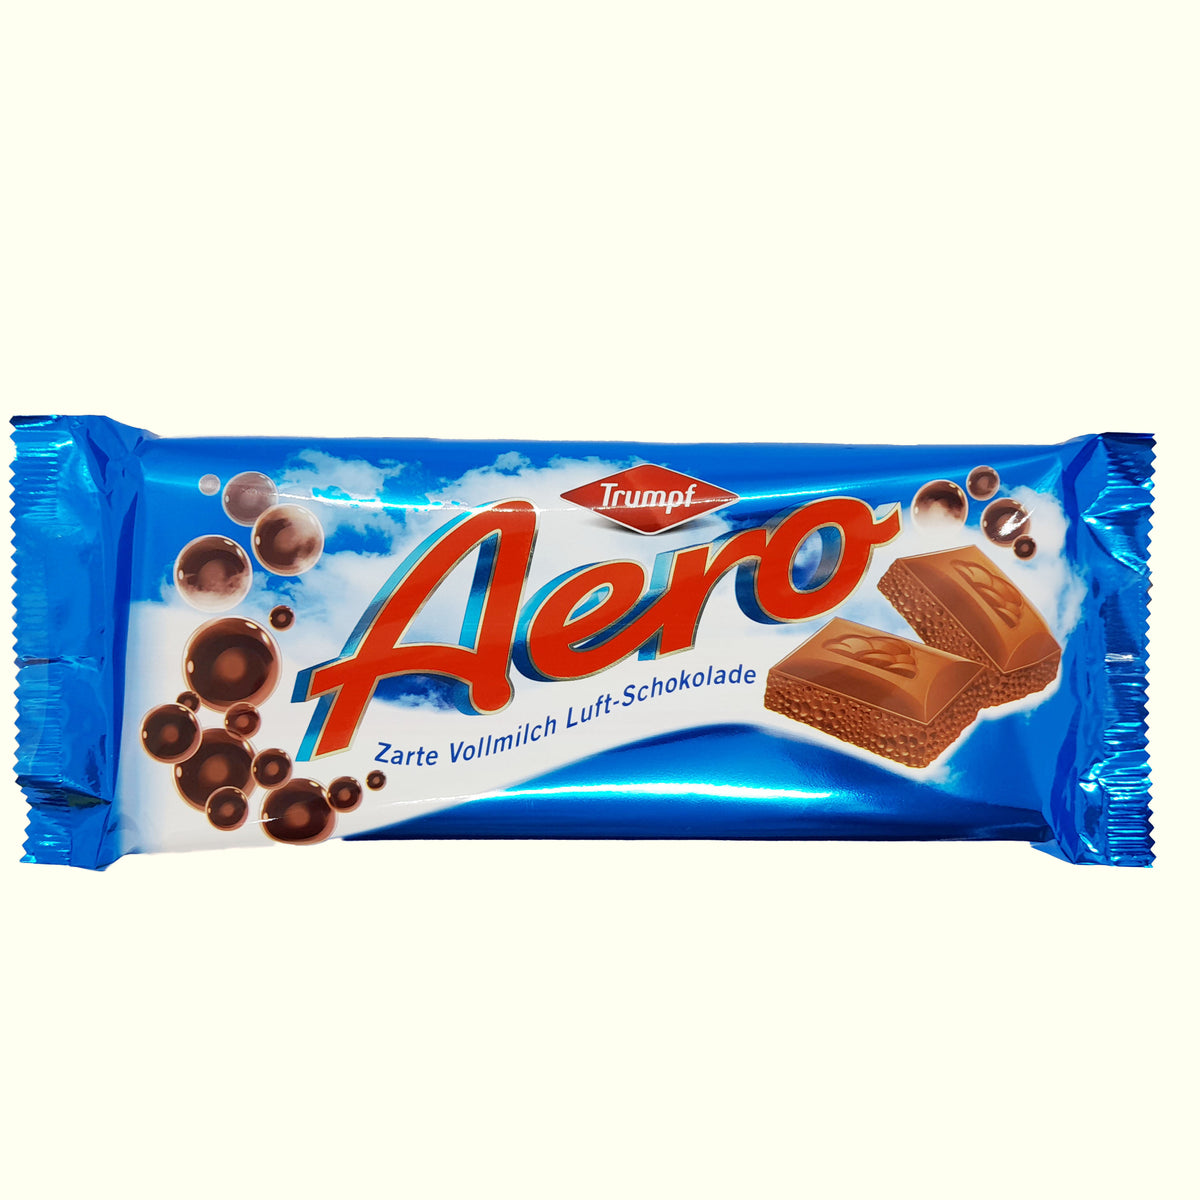 Aero Zarte Vollmilch Luft- Schokolade 100g